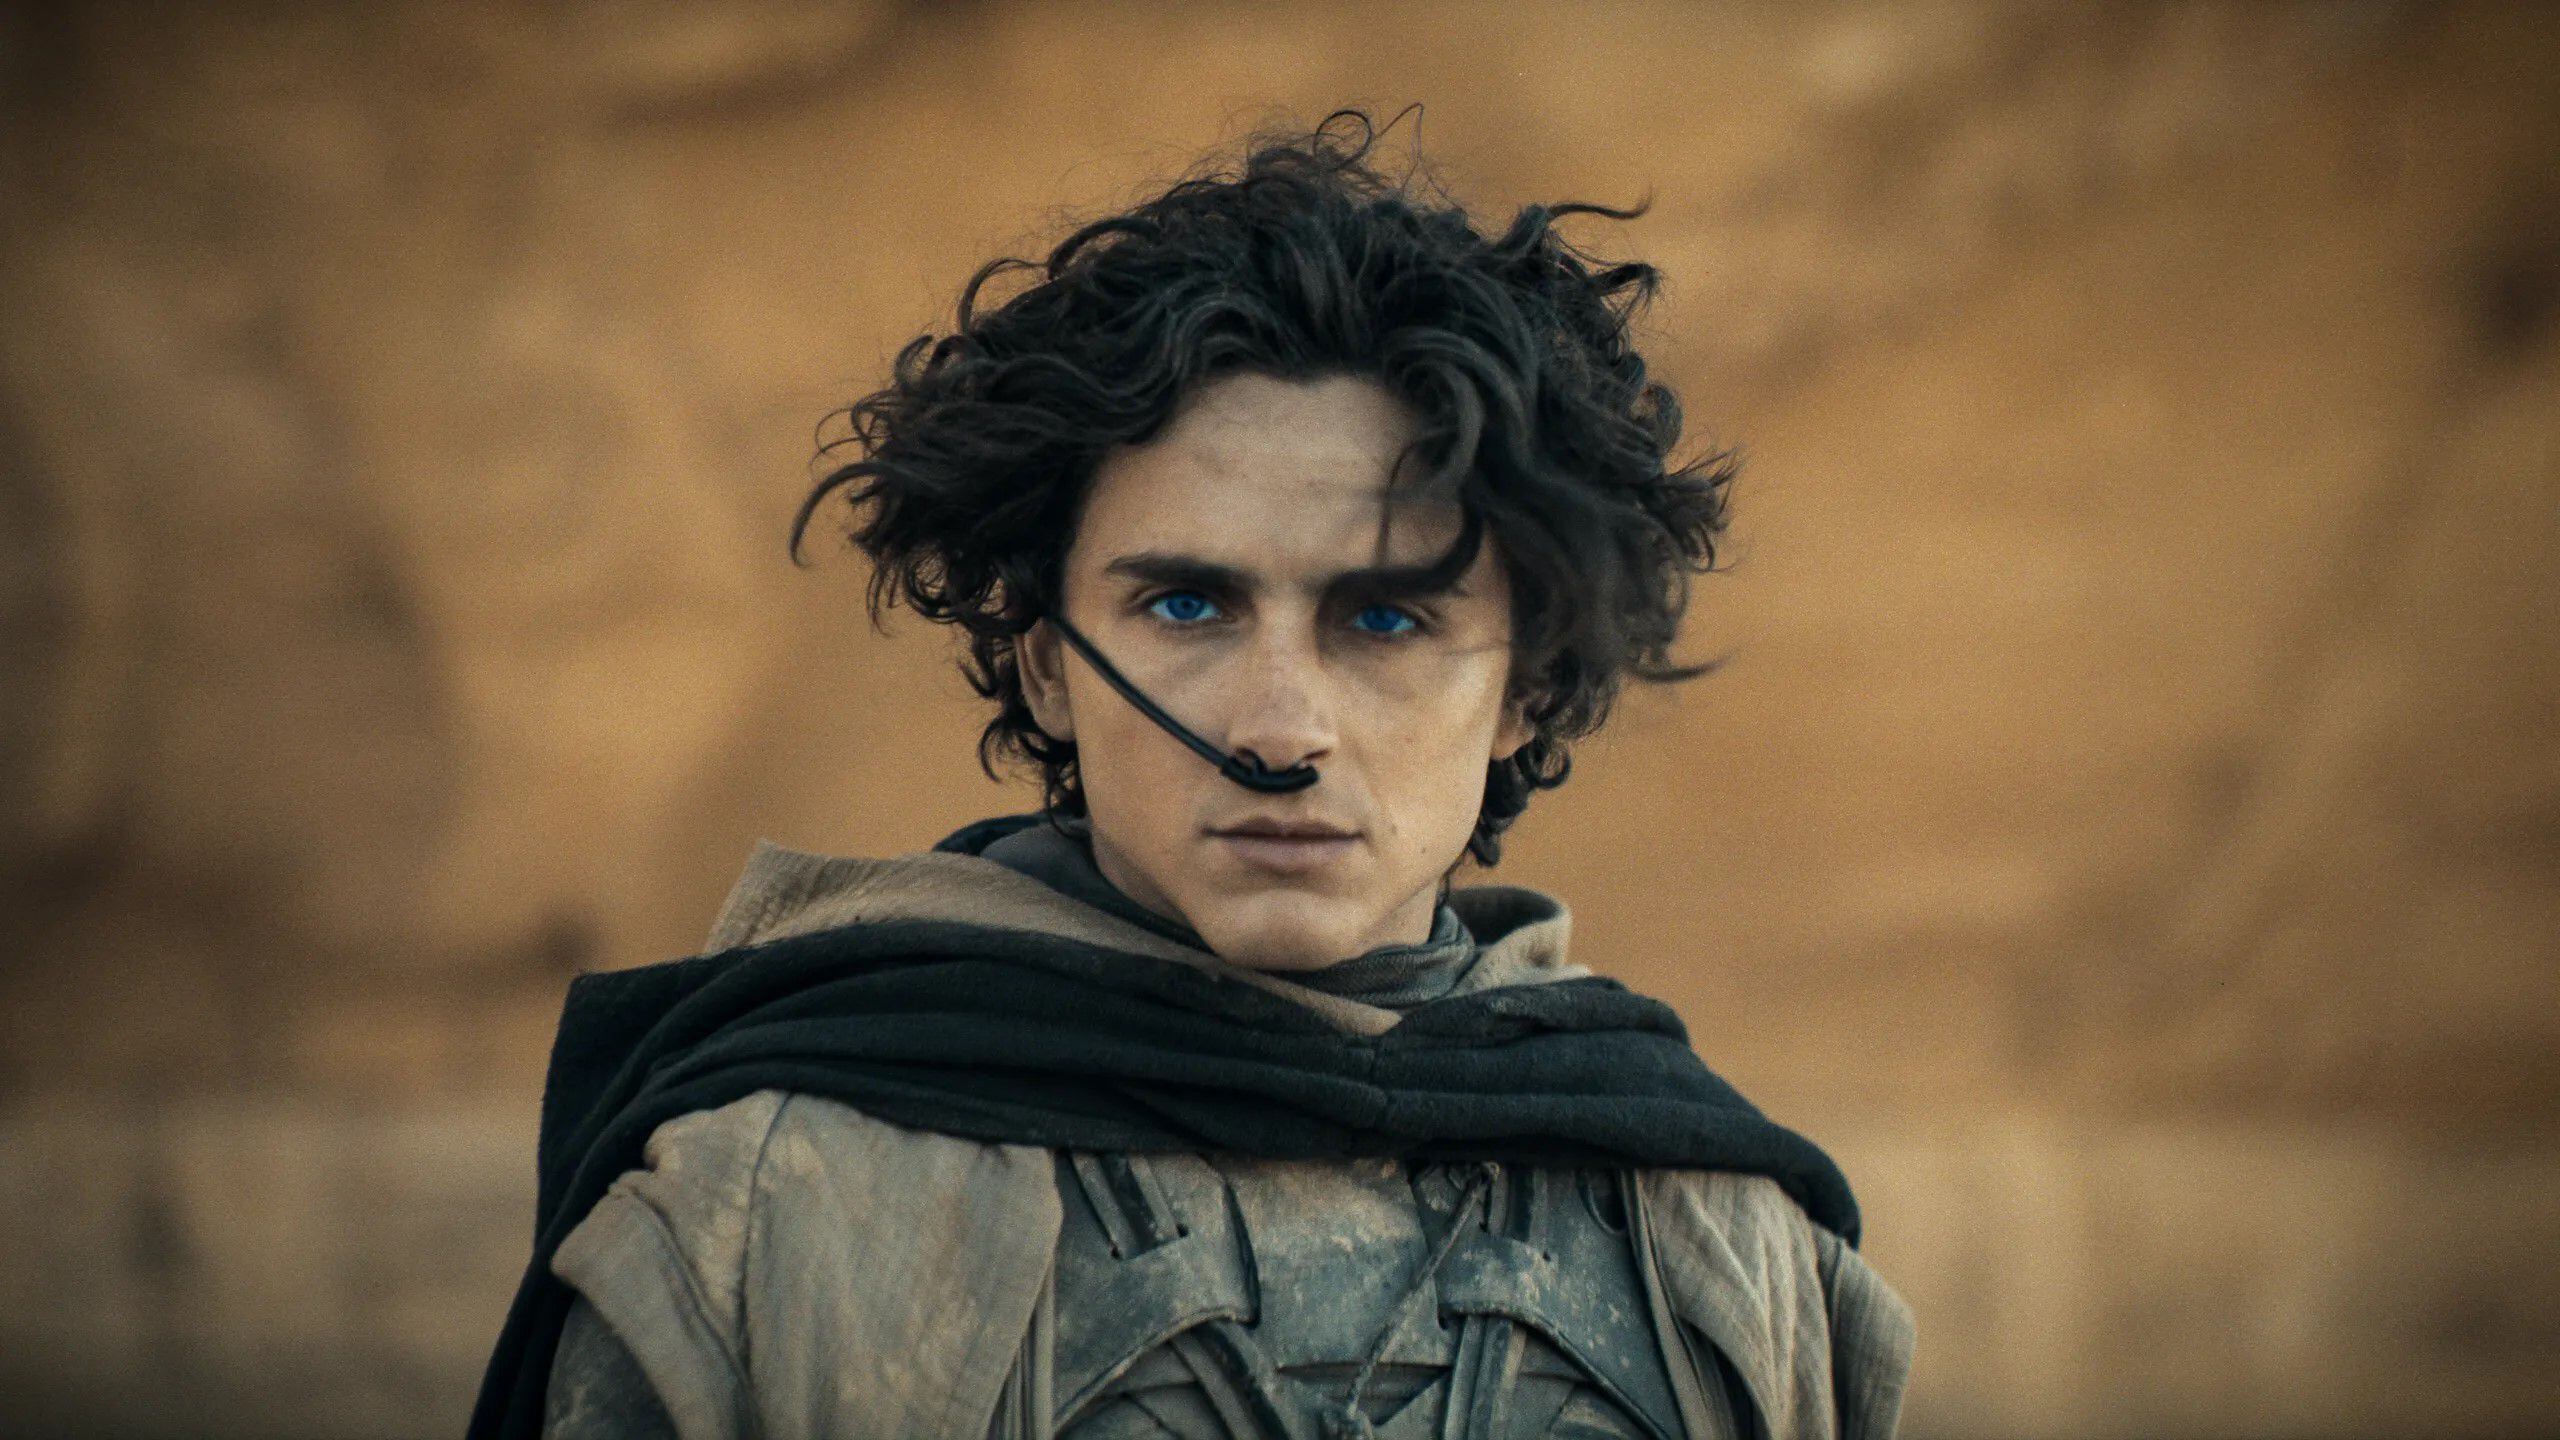 Timotheé Chalamet encarna al atribulado Paul Atreides en la saga de 'Dune', quien debe enfrentar sus miedos y las dudas acerca de su figura. Foto: Warner Bros